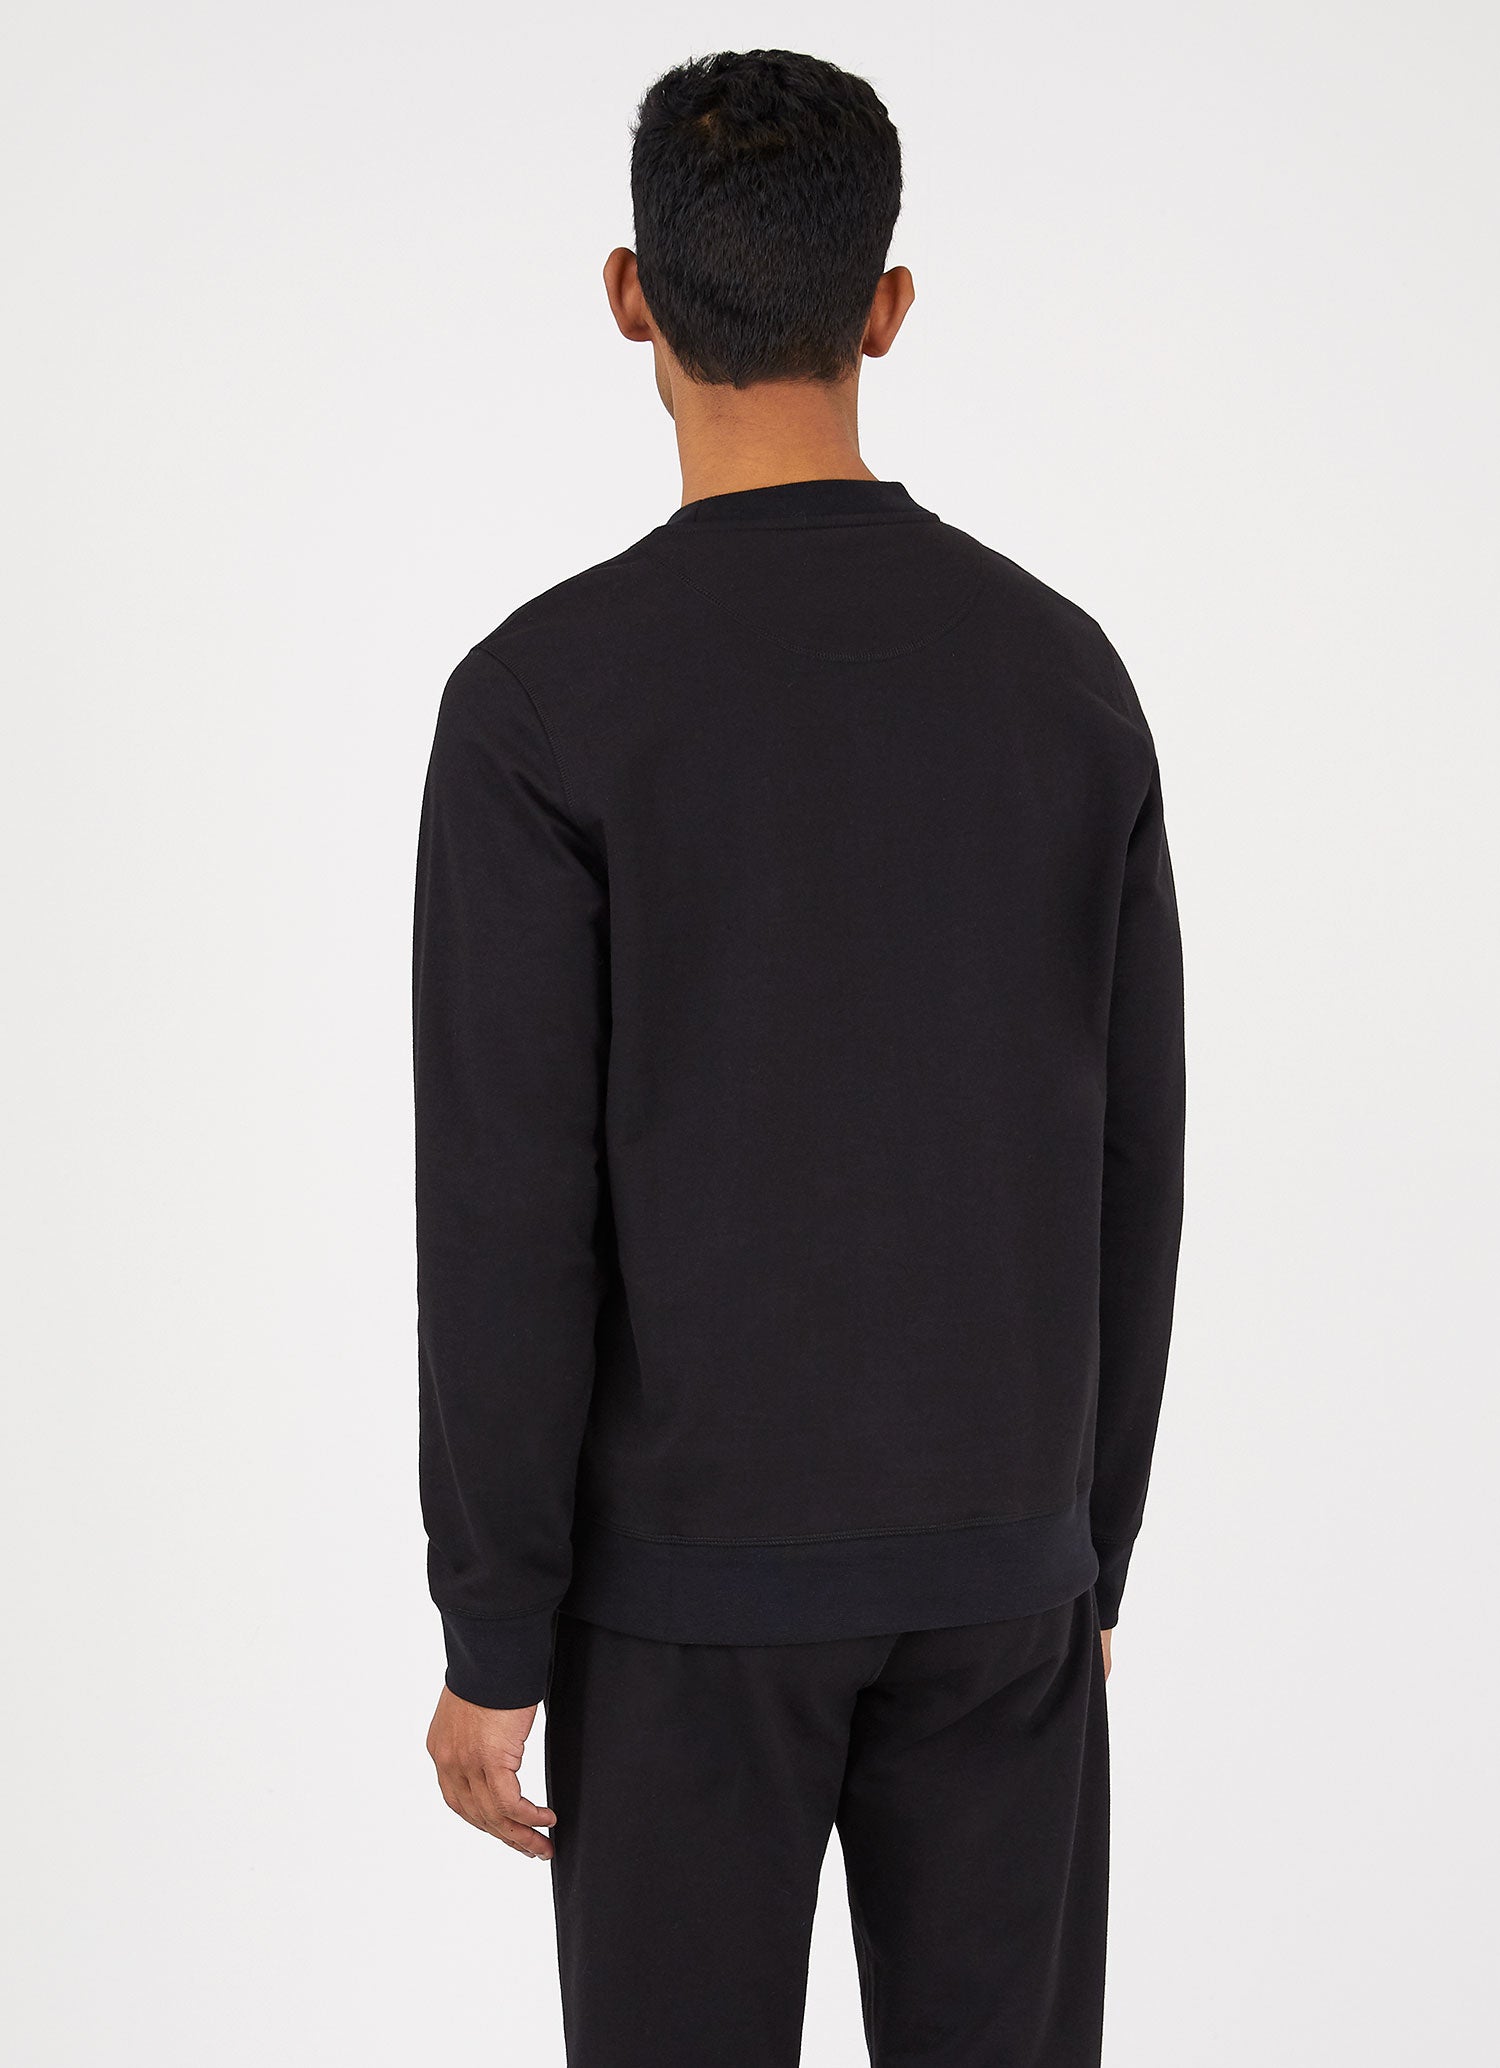 Men's DriRelease Active Sweatshirt in Black